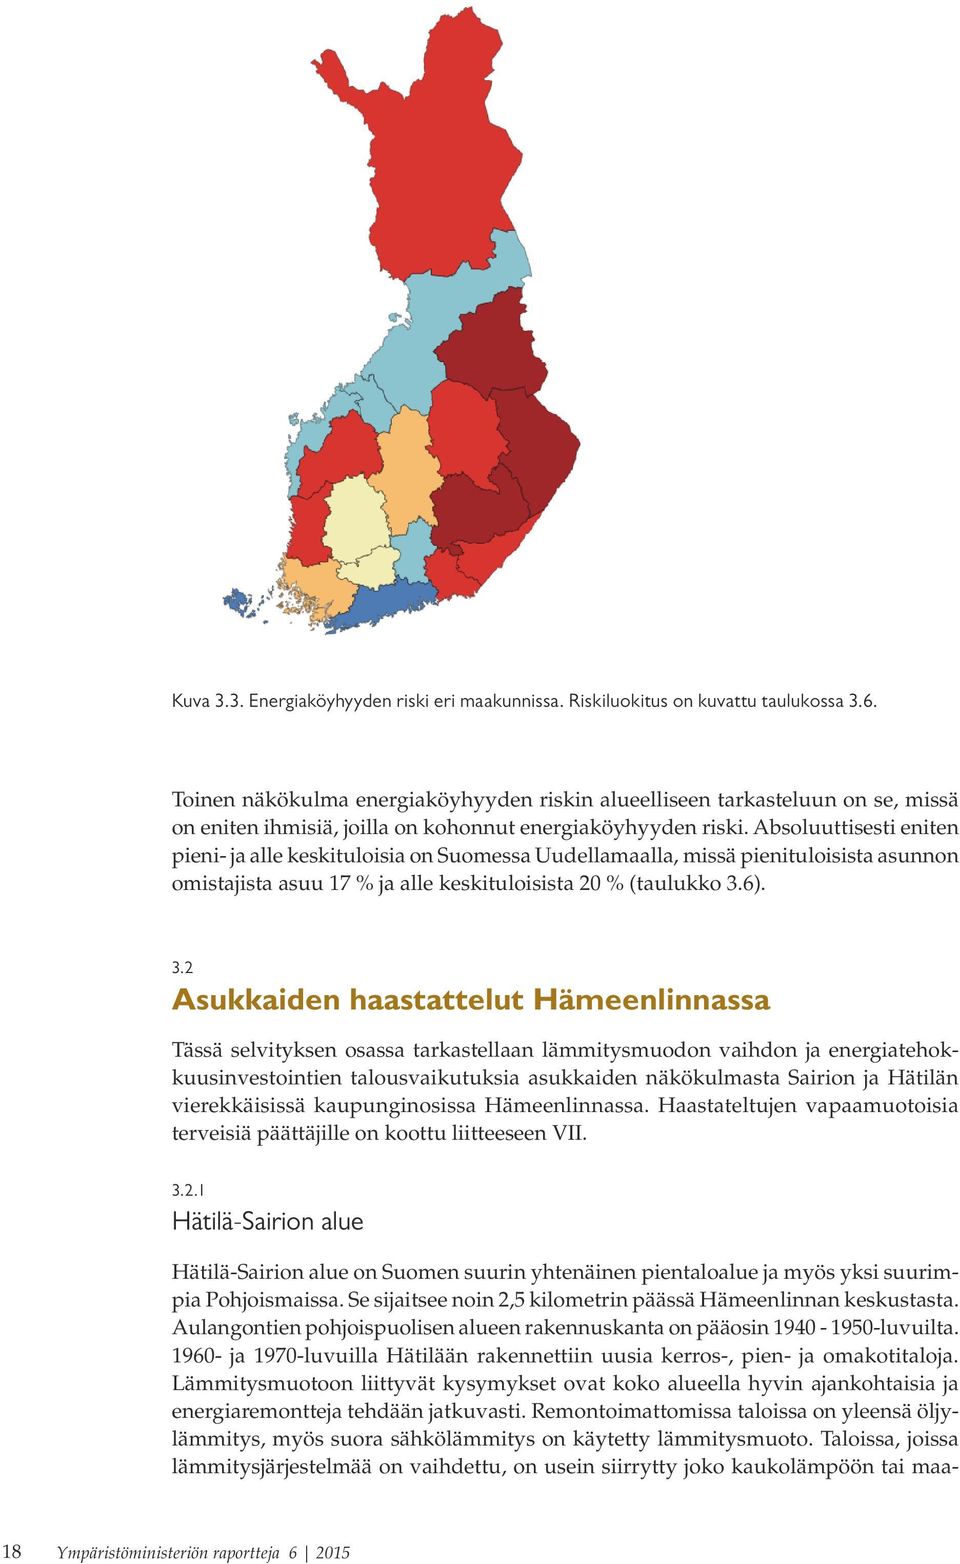 Absoluuttisesti eniten pieni- ja alle keskituloisia on Suomessa Uudellamaalla, missä pienituloisista asunnon omistajista asuu 17 % ja alle keskituloisista 20 % (taulukko 3.